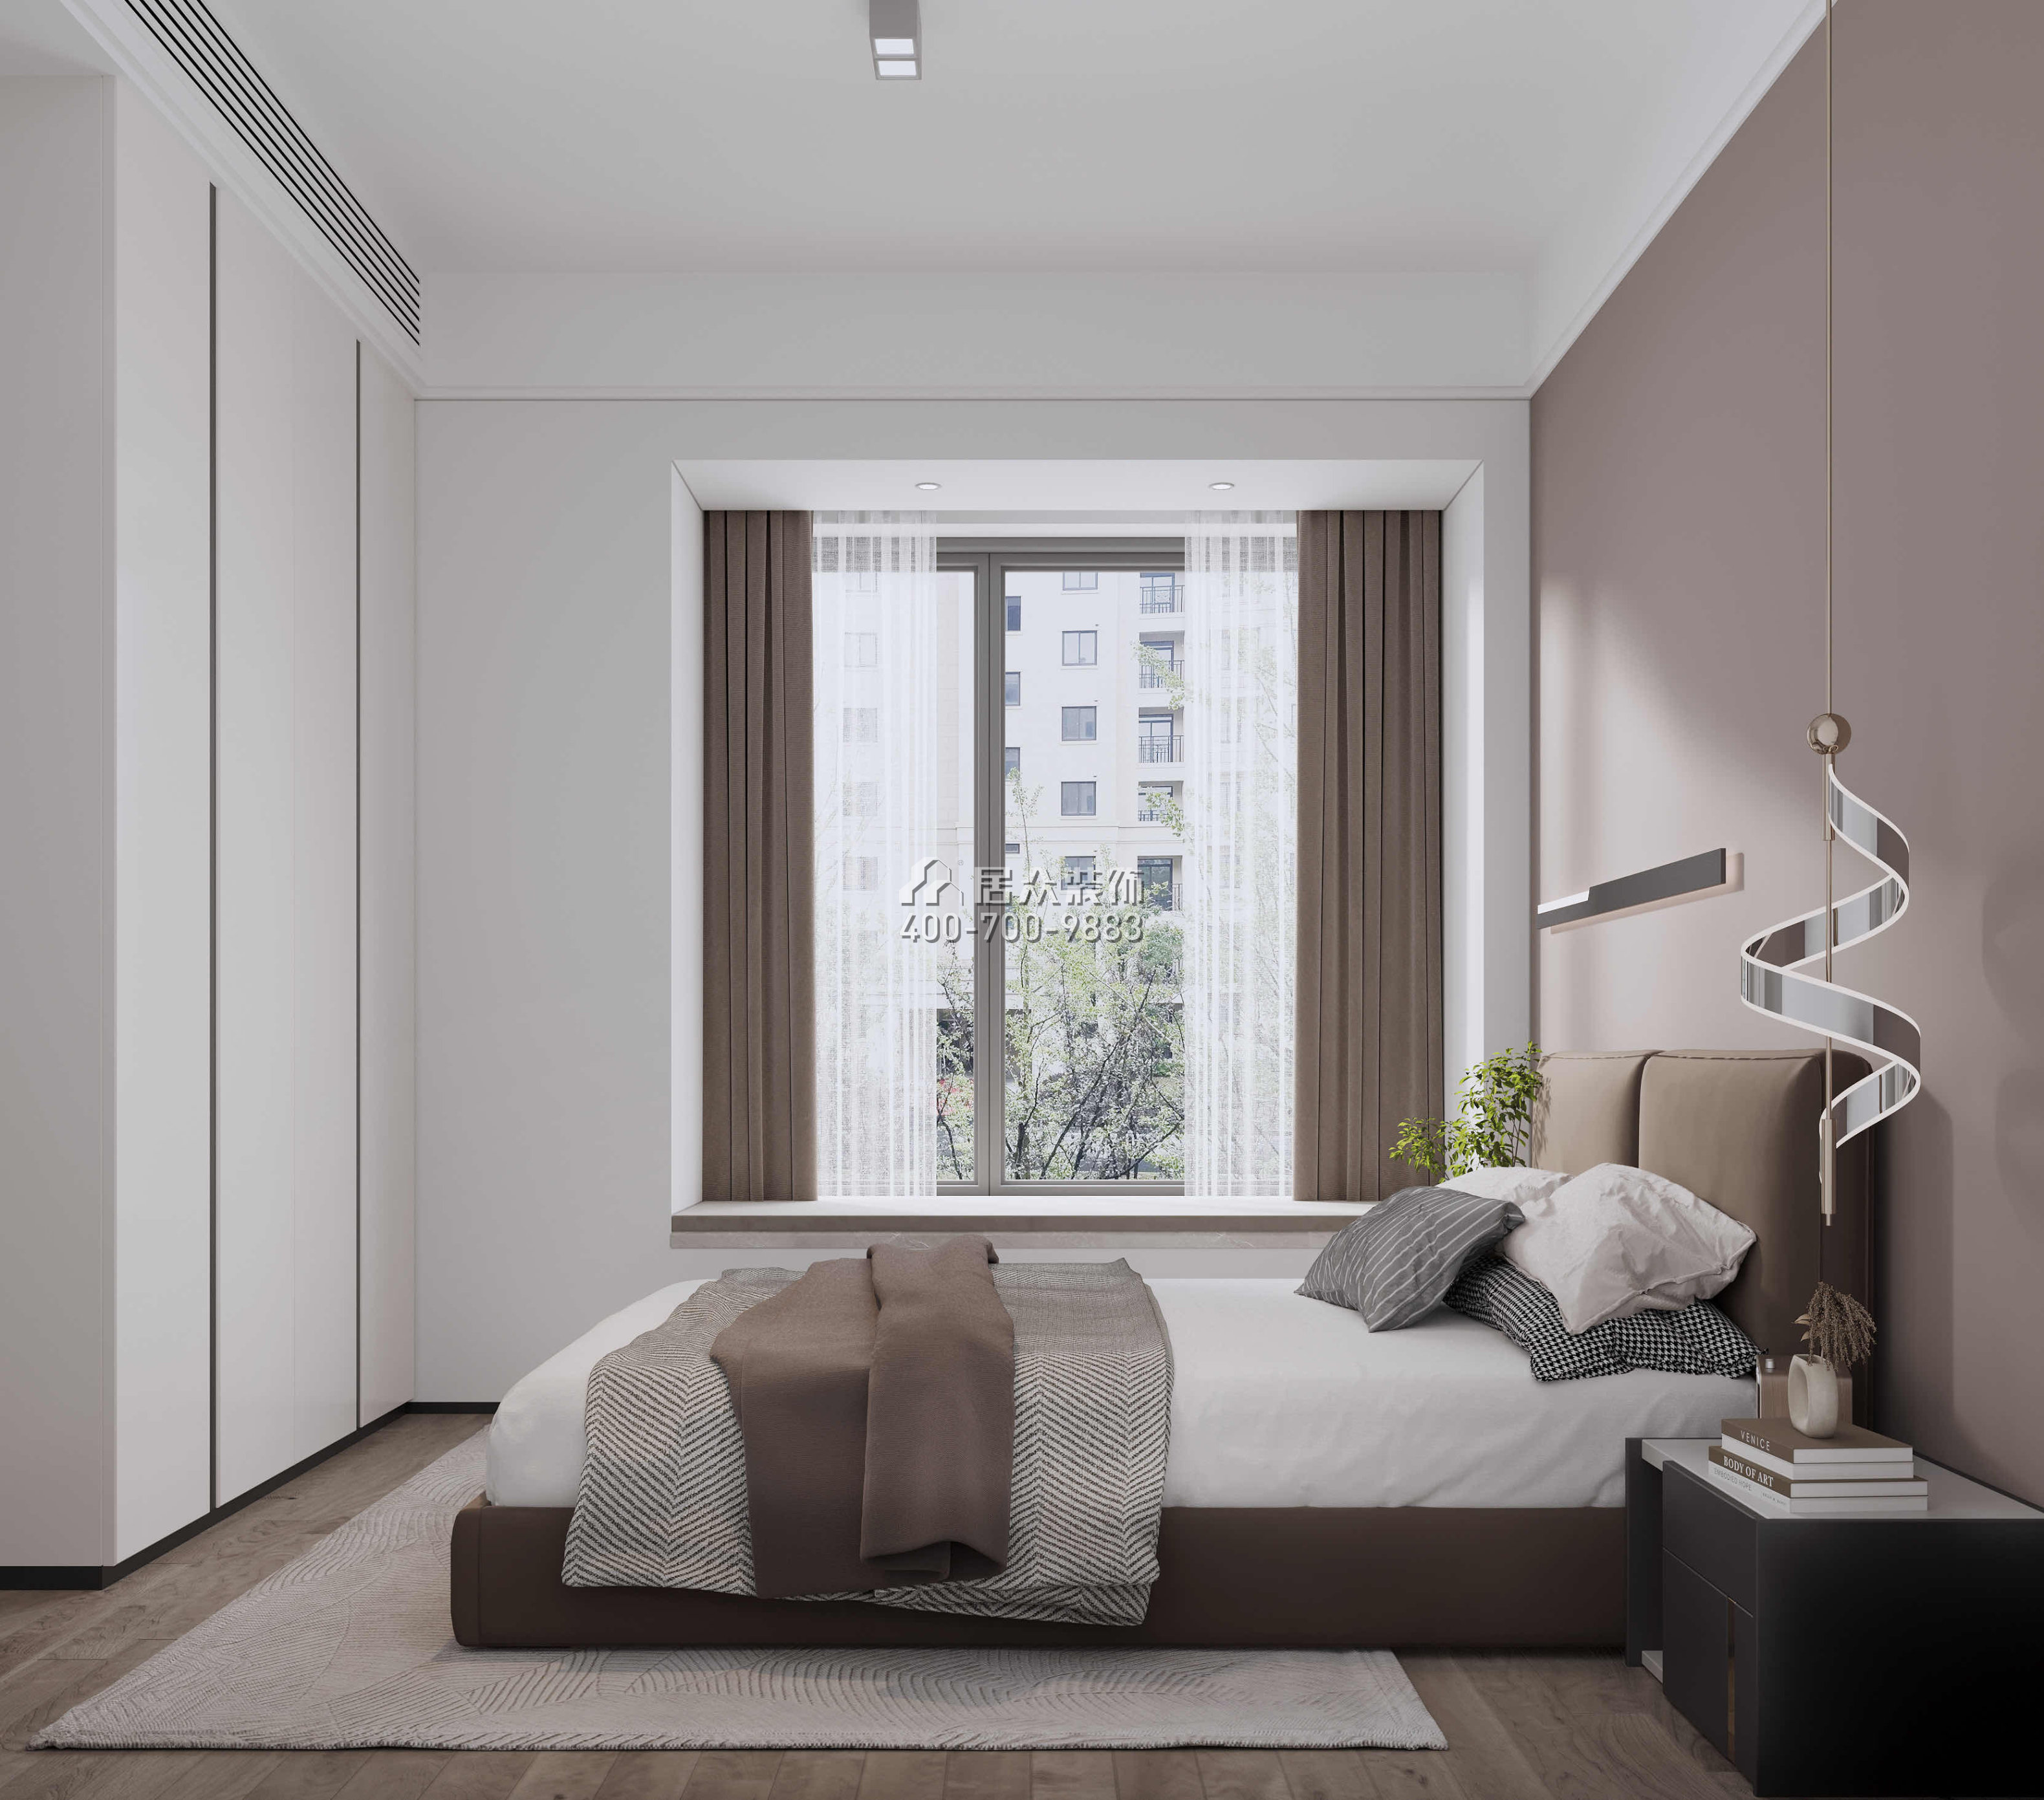 深业鹤塘岭花园120平方米现代简约风格平层户型卧室装修效果图